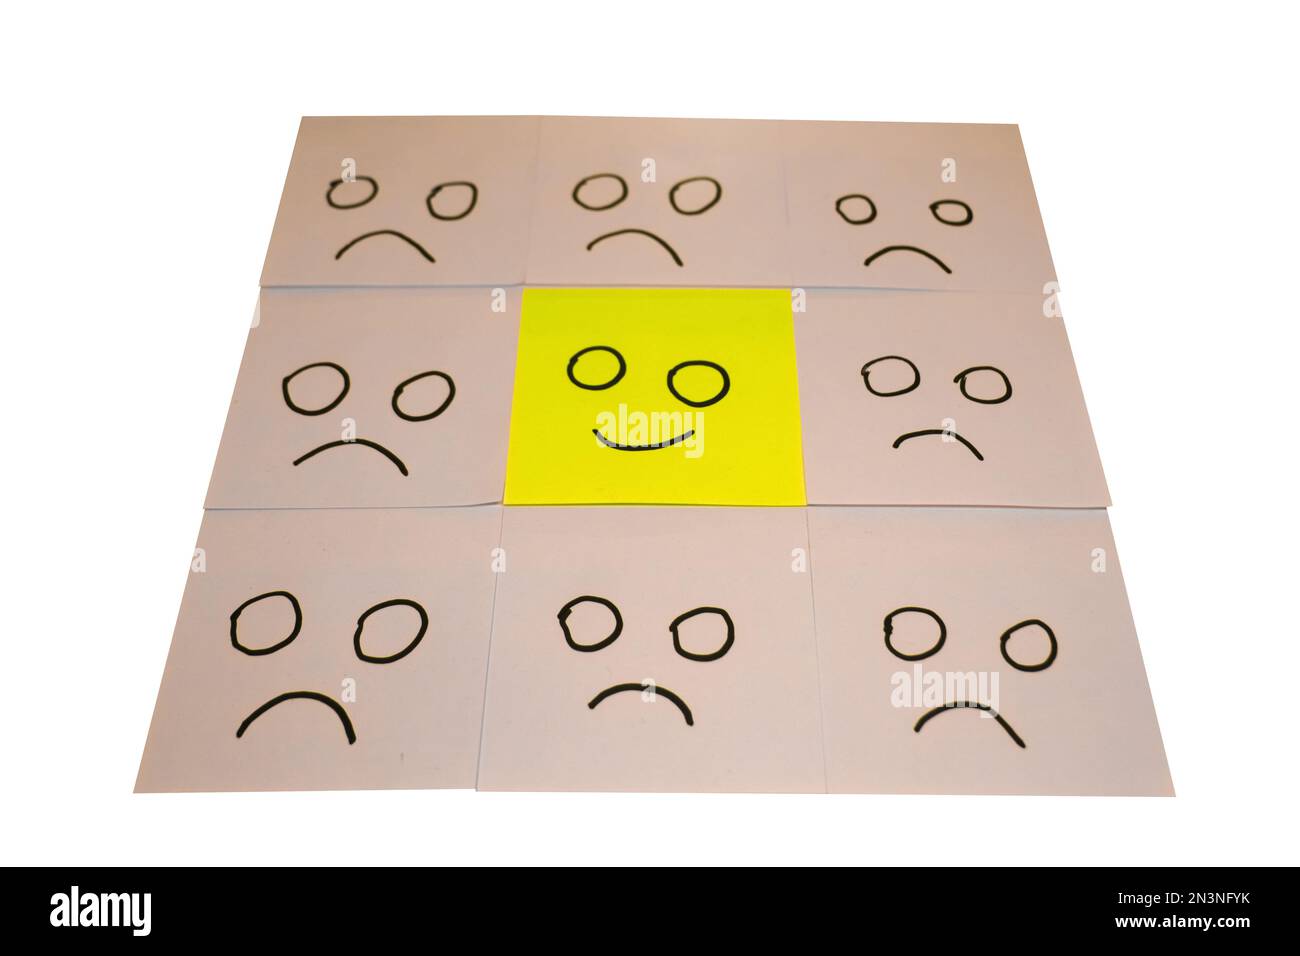 Positive Einstellung und glückliches Konzept. Ein Lächeln und eine traurige Emotion auf dem Hintergrund von Haftnotizen von Hand gezeichnet. Stockfoto